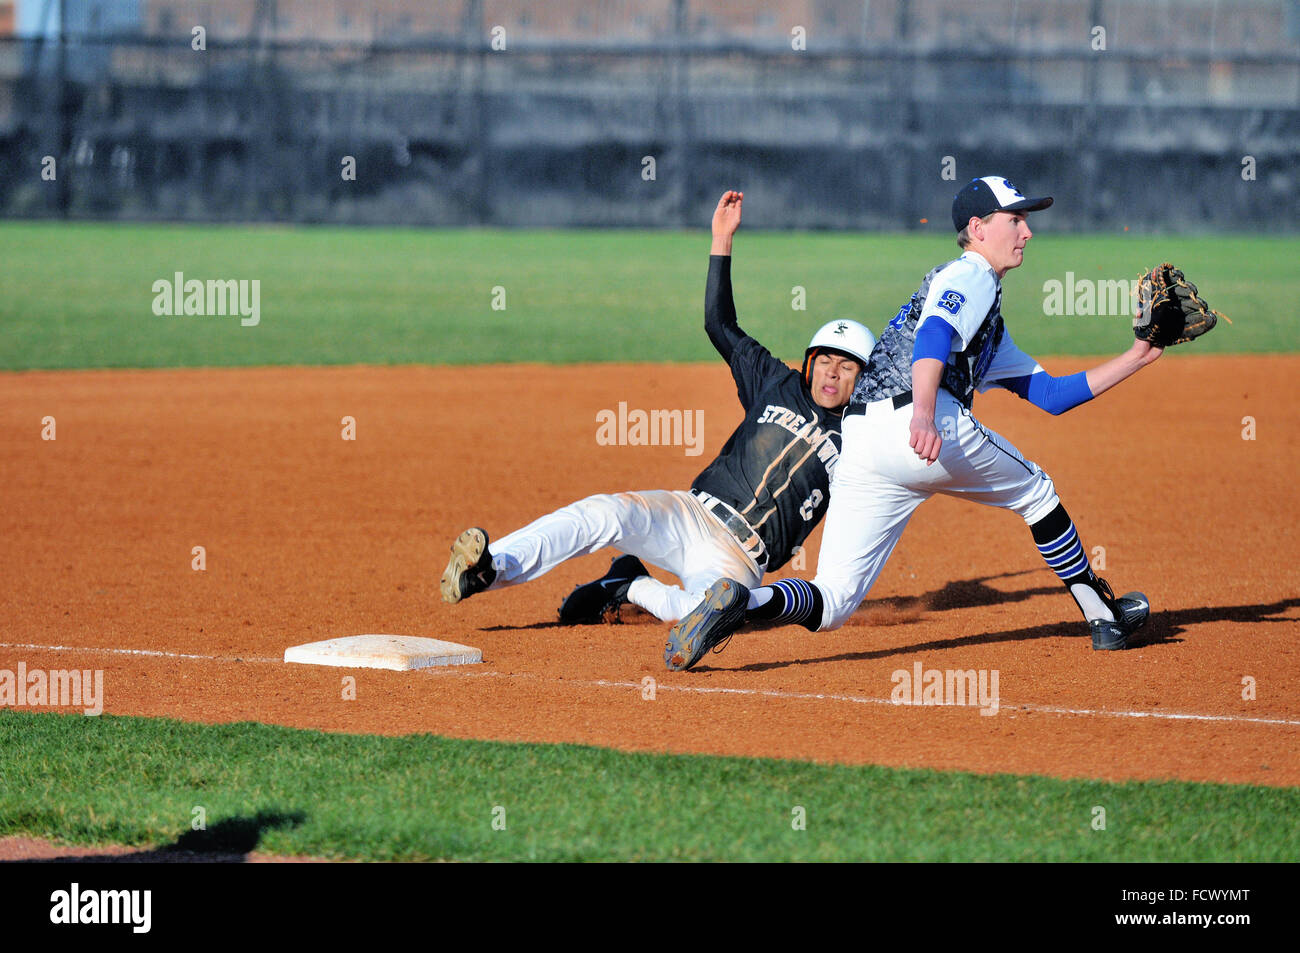 High school base runner glisse en toute sécurité dans la troisième base avec un vol de base que le joueur accepte un pas de la catcher. Banque D'Images